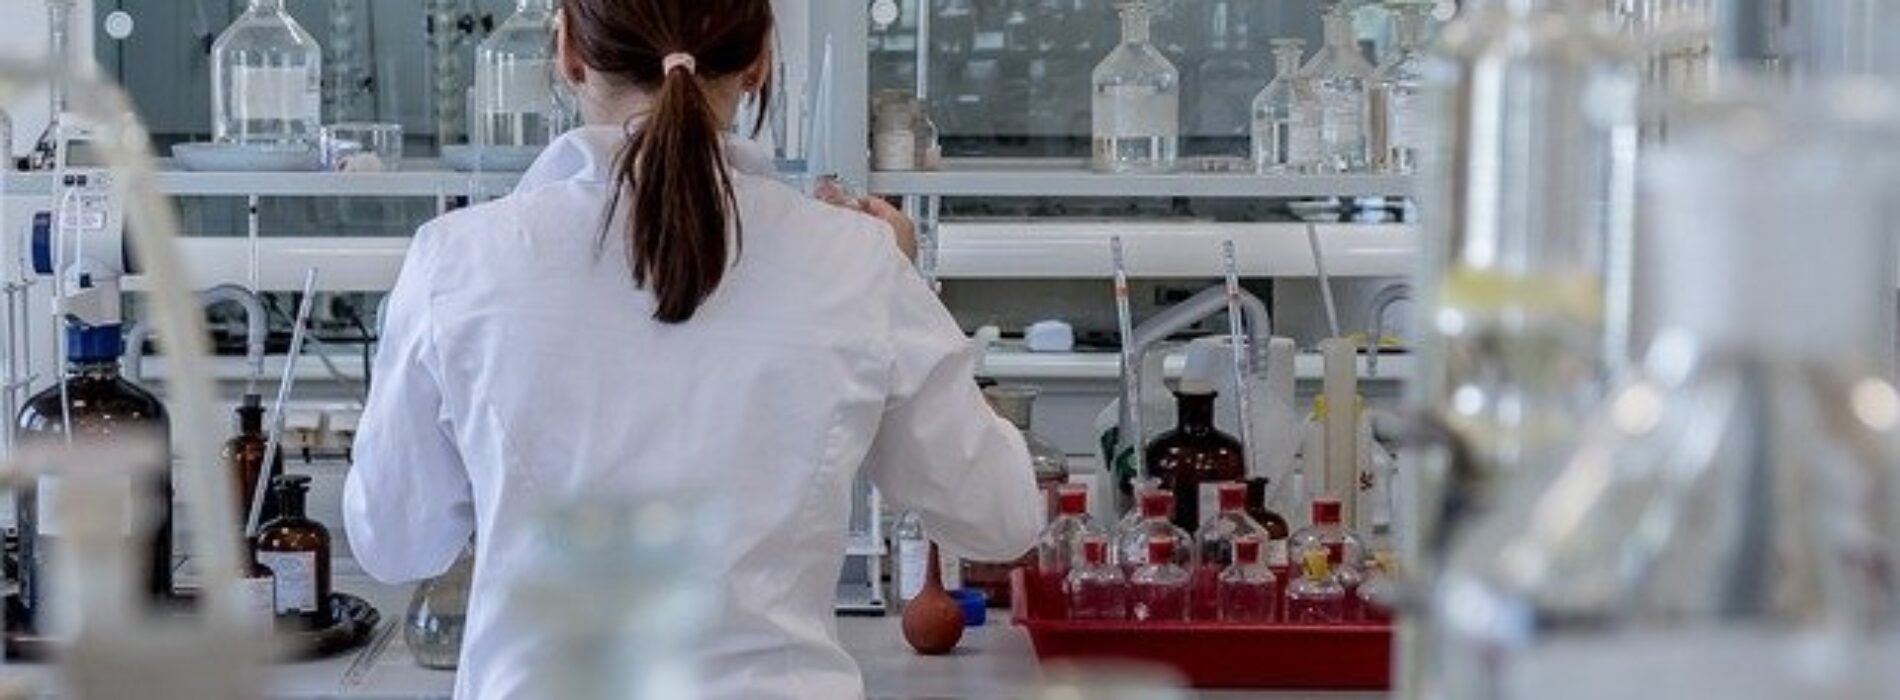 Skorzystaj ze szkoleń dla laboratoriów – zainwestuj w podniesienie jakości pracy Twojej załogi